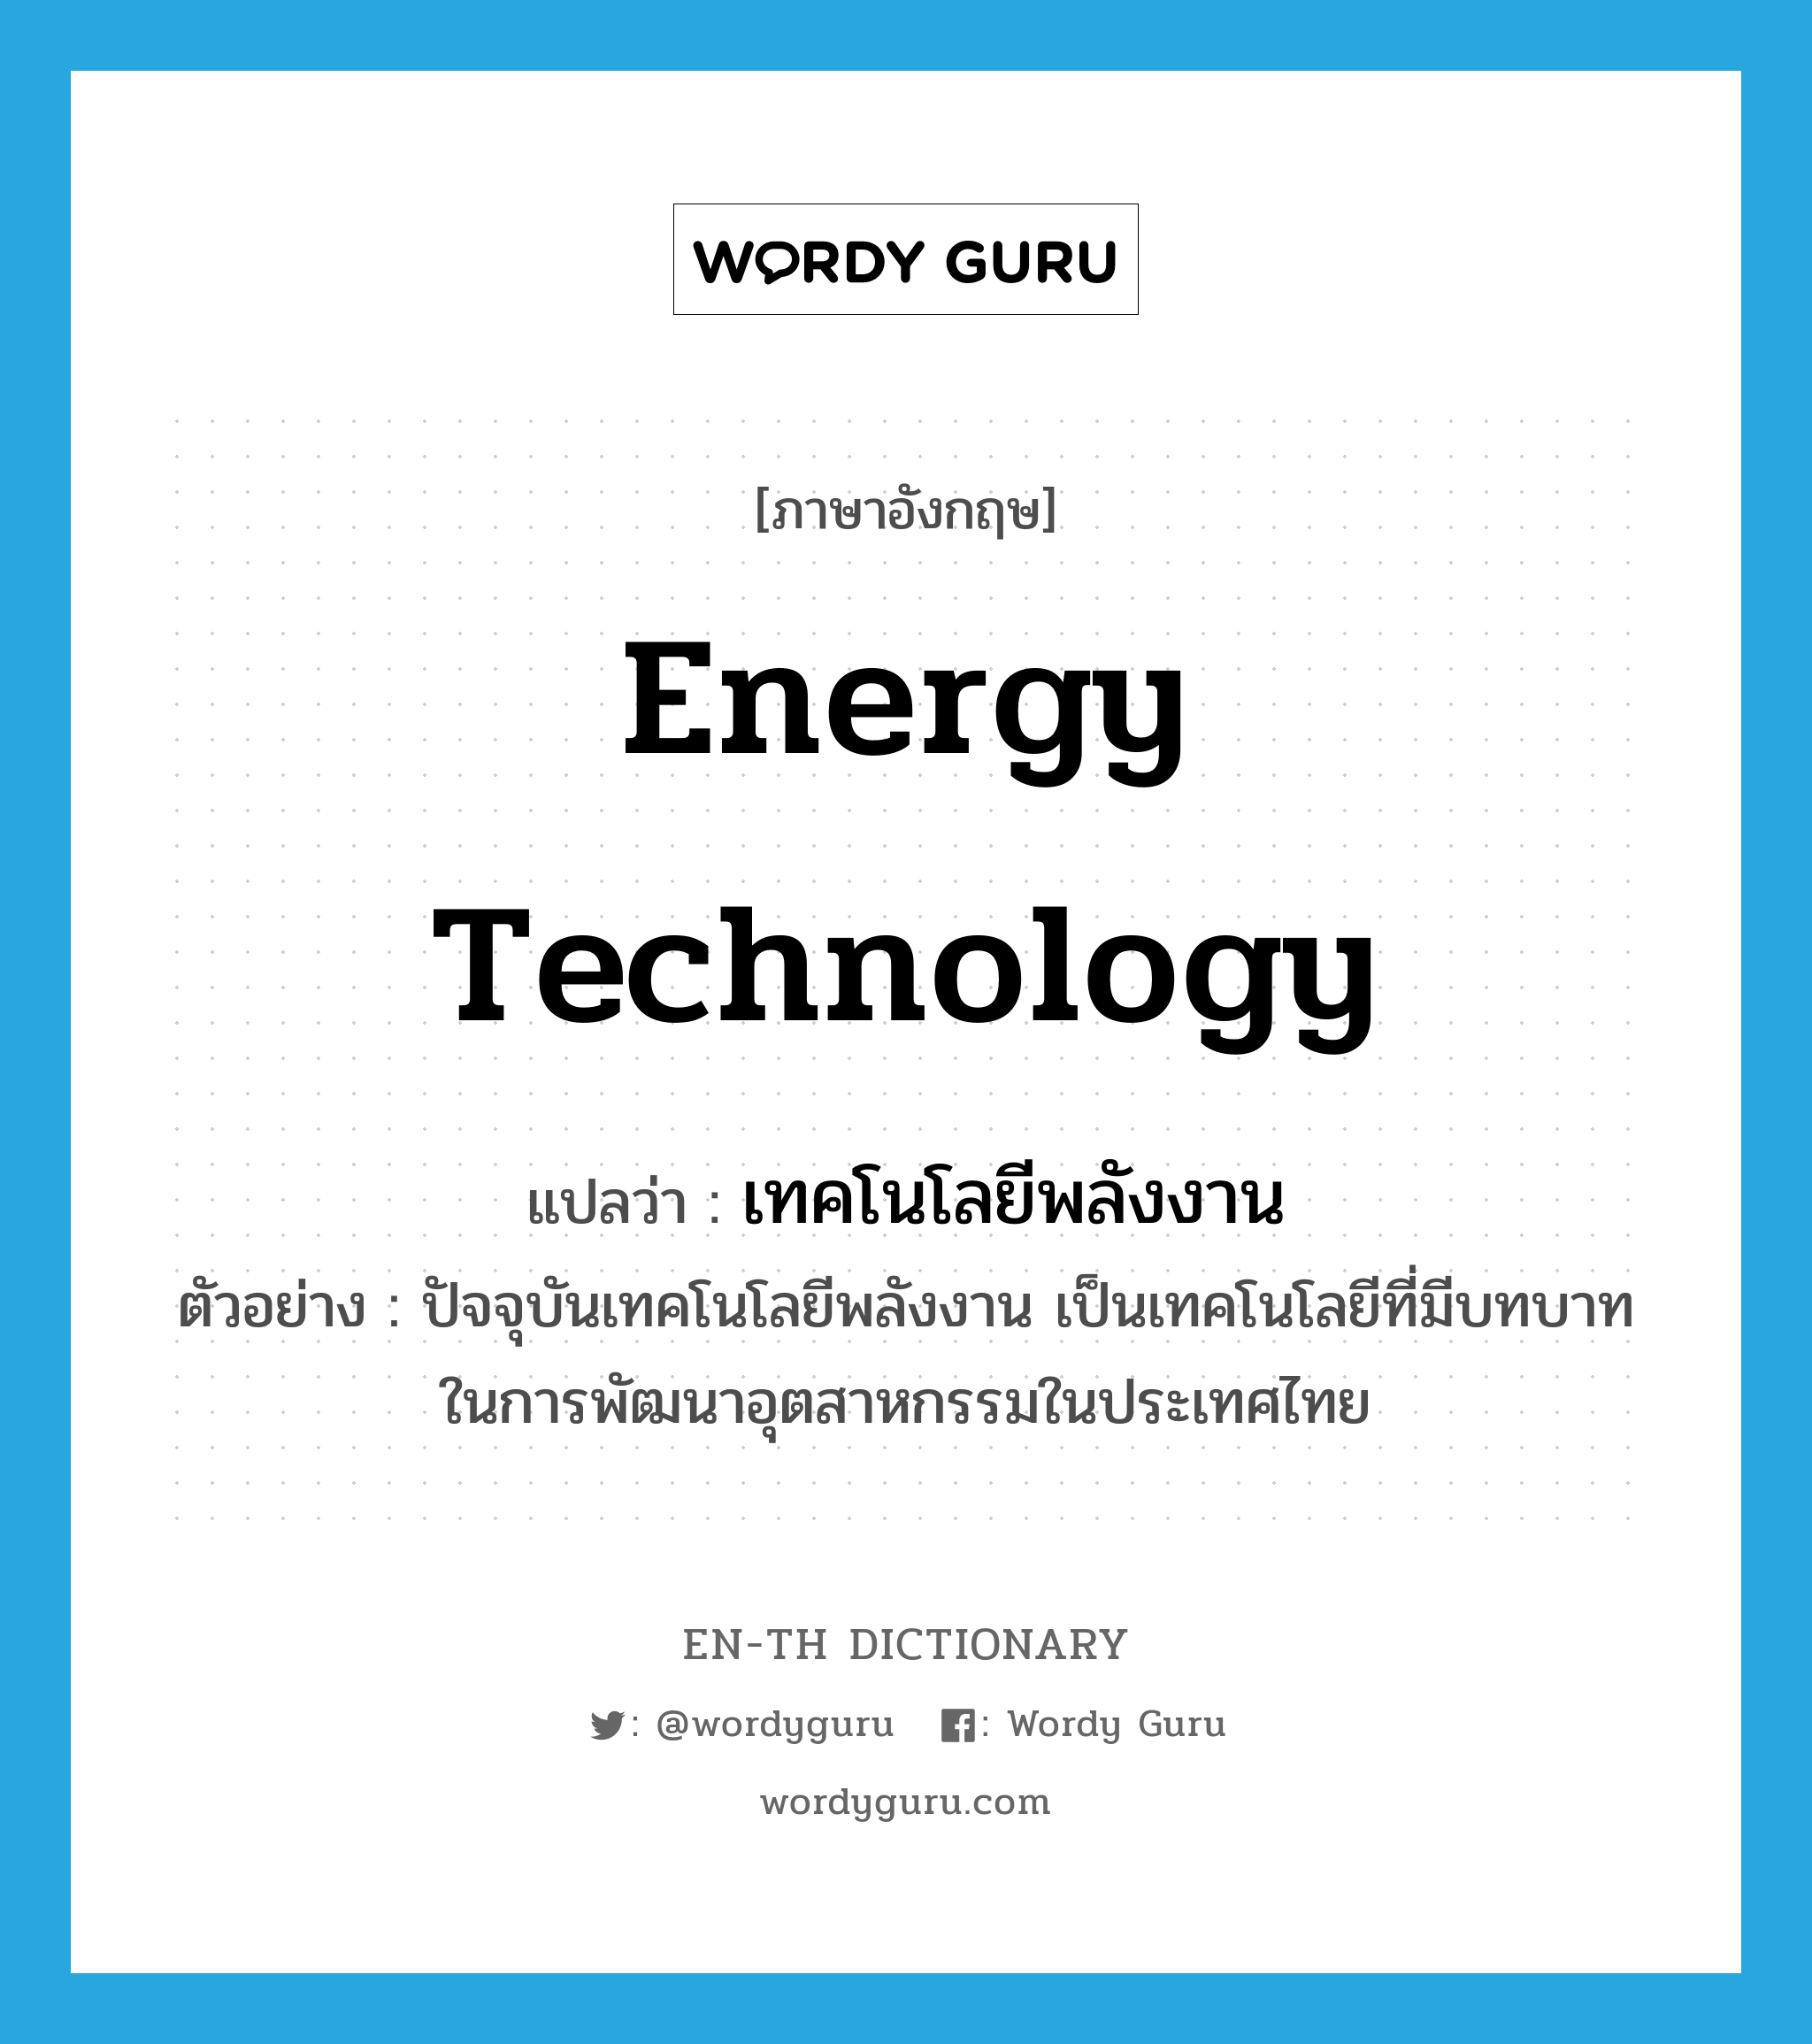 เทคโนโลยีพลังงาน ภาษาอังกฤษ?, คำศัพท์ภาษาอังกฤษ เทคโนโลยีพลังงาน แปลว่า energy technology ประเภท N ตัวอย่าง ปัจจุบันเทคโนโลยีพลังงาน เป็นเทคโนโลยีที่มีบทบาทในการพัฒนาอุตสาหกรรมในประเทศไทย หมวด N